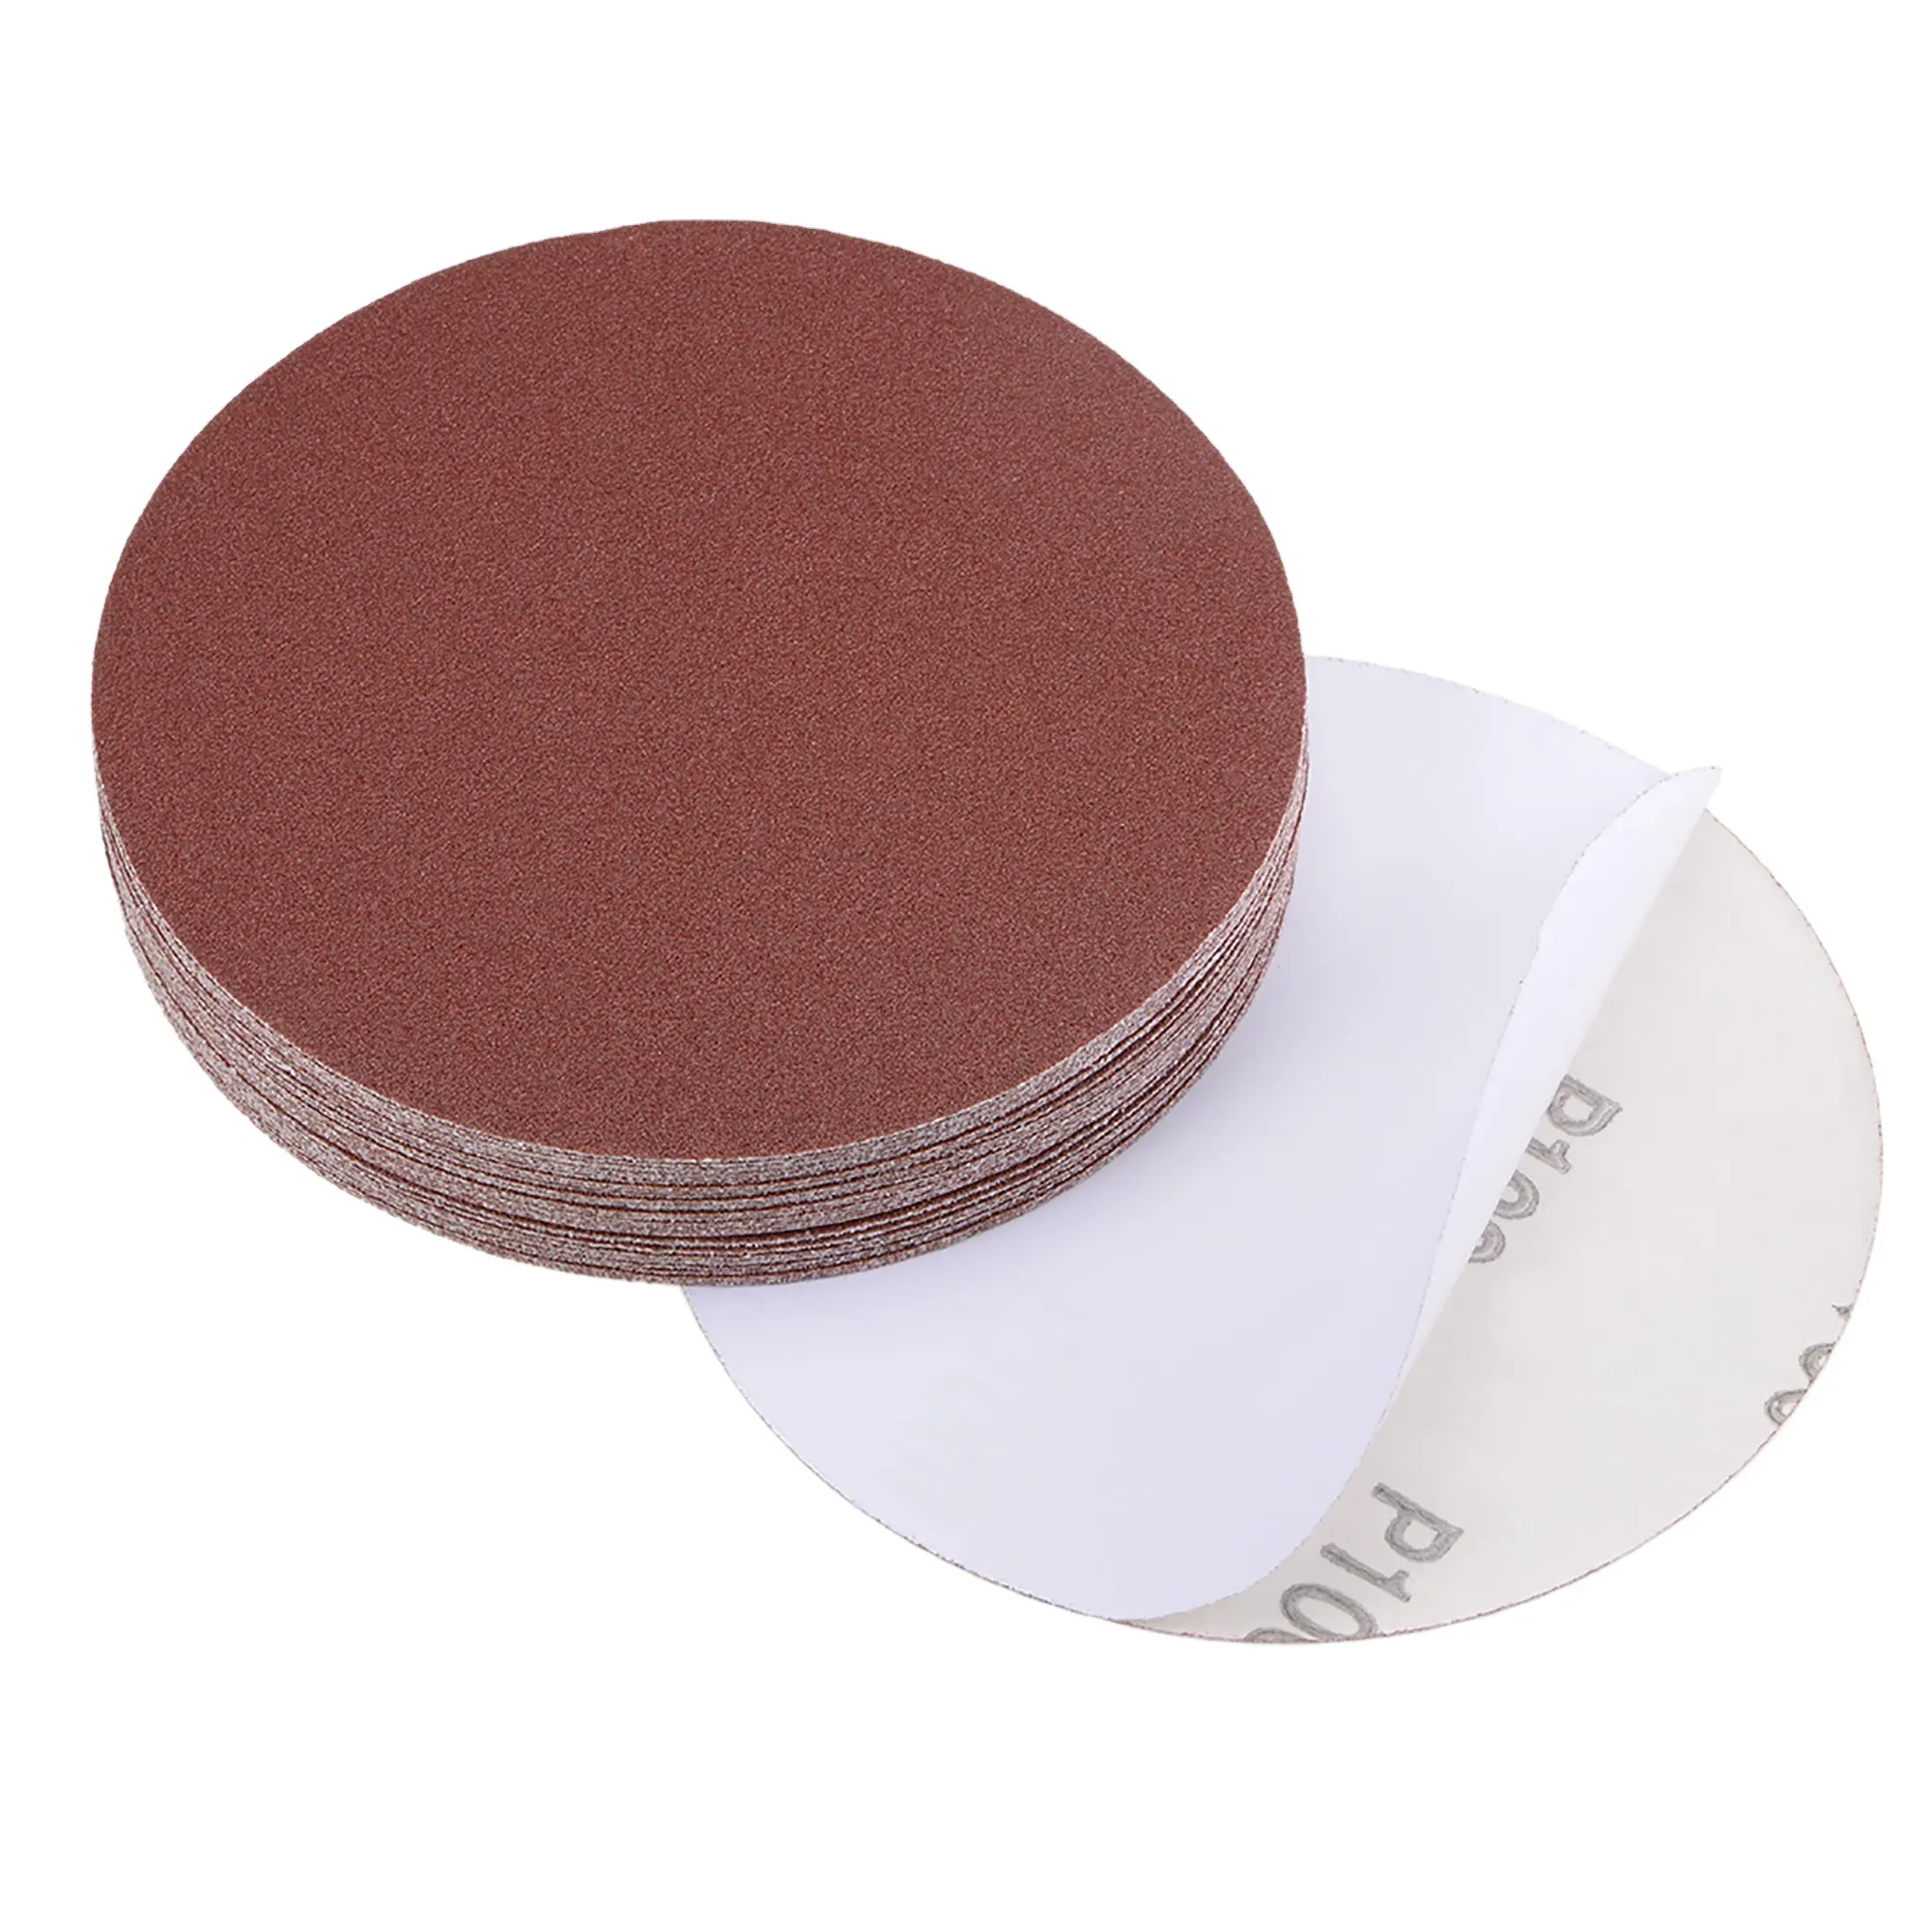 GLORY-Herramientas abrasivas, disco de lija autoadhesivo de óxido de aluminio de color rojo, disco de lijado PSA